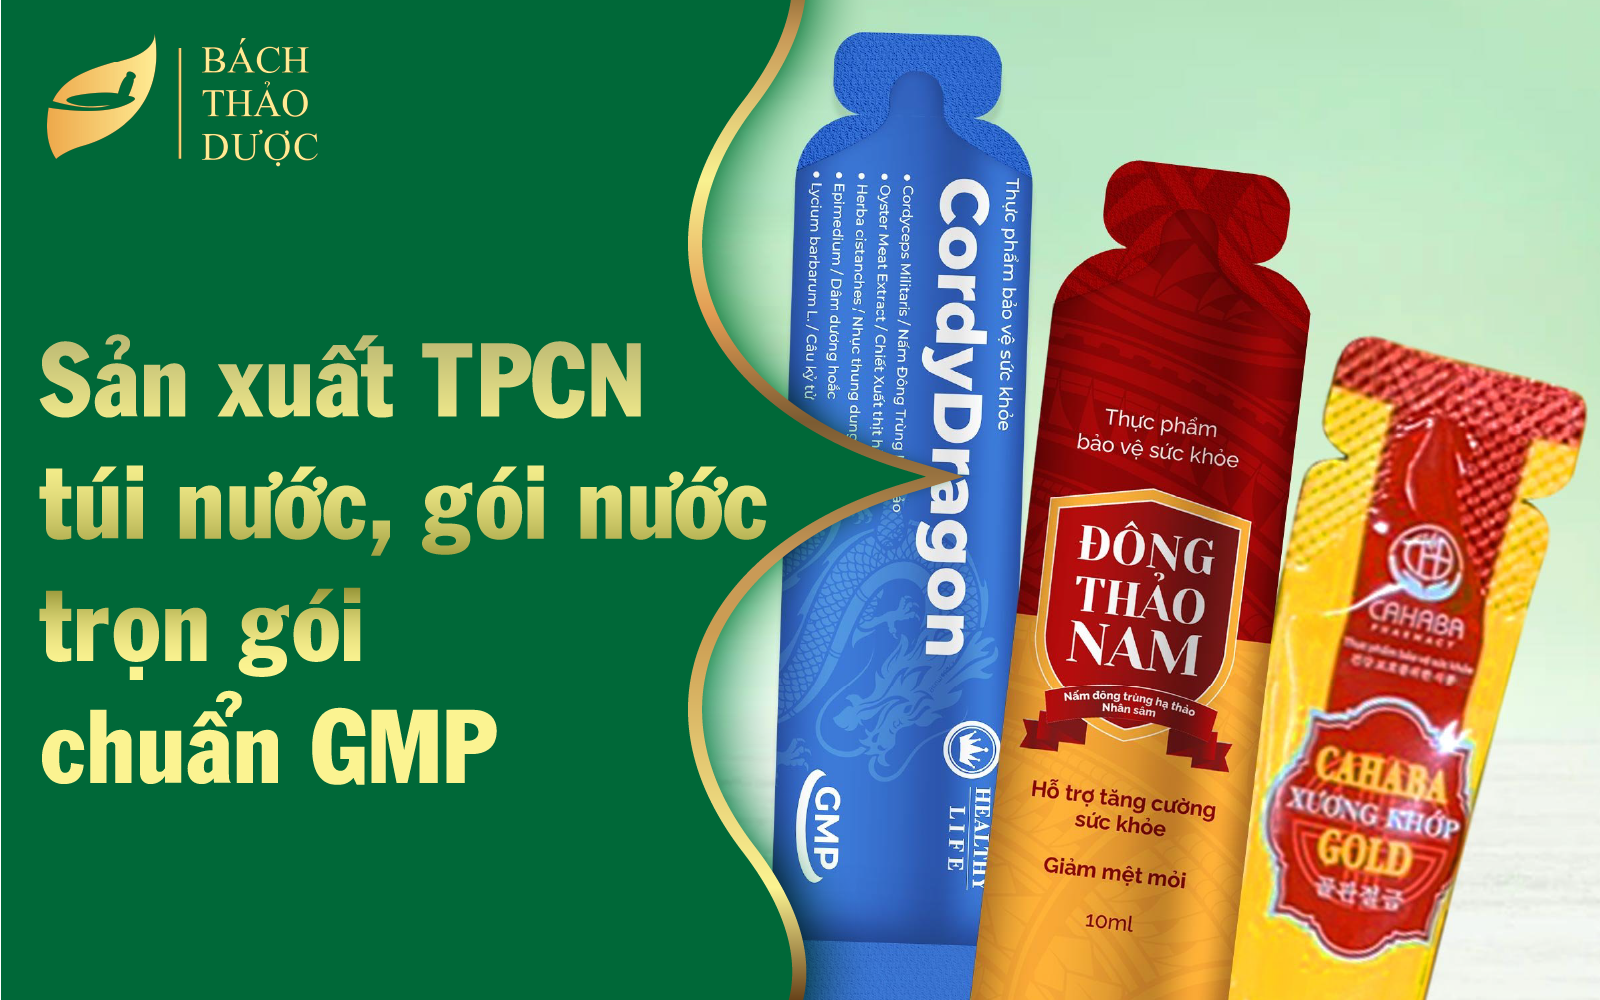 Sản xuất TPCN dạng túi nước, gói nước trọn gói chuẩn GMP